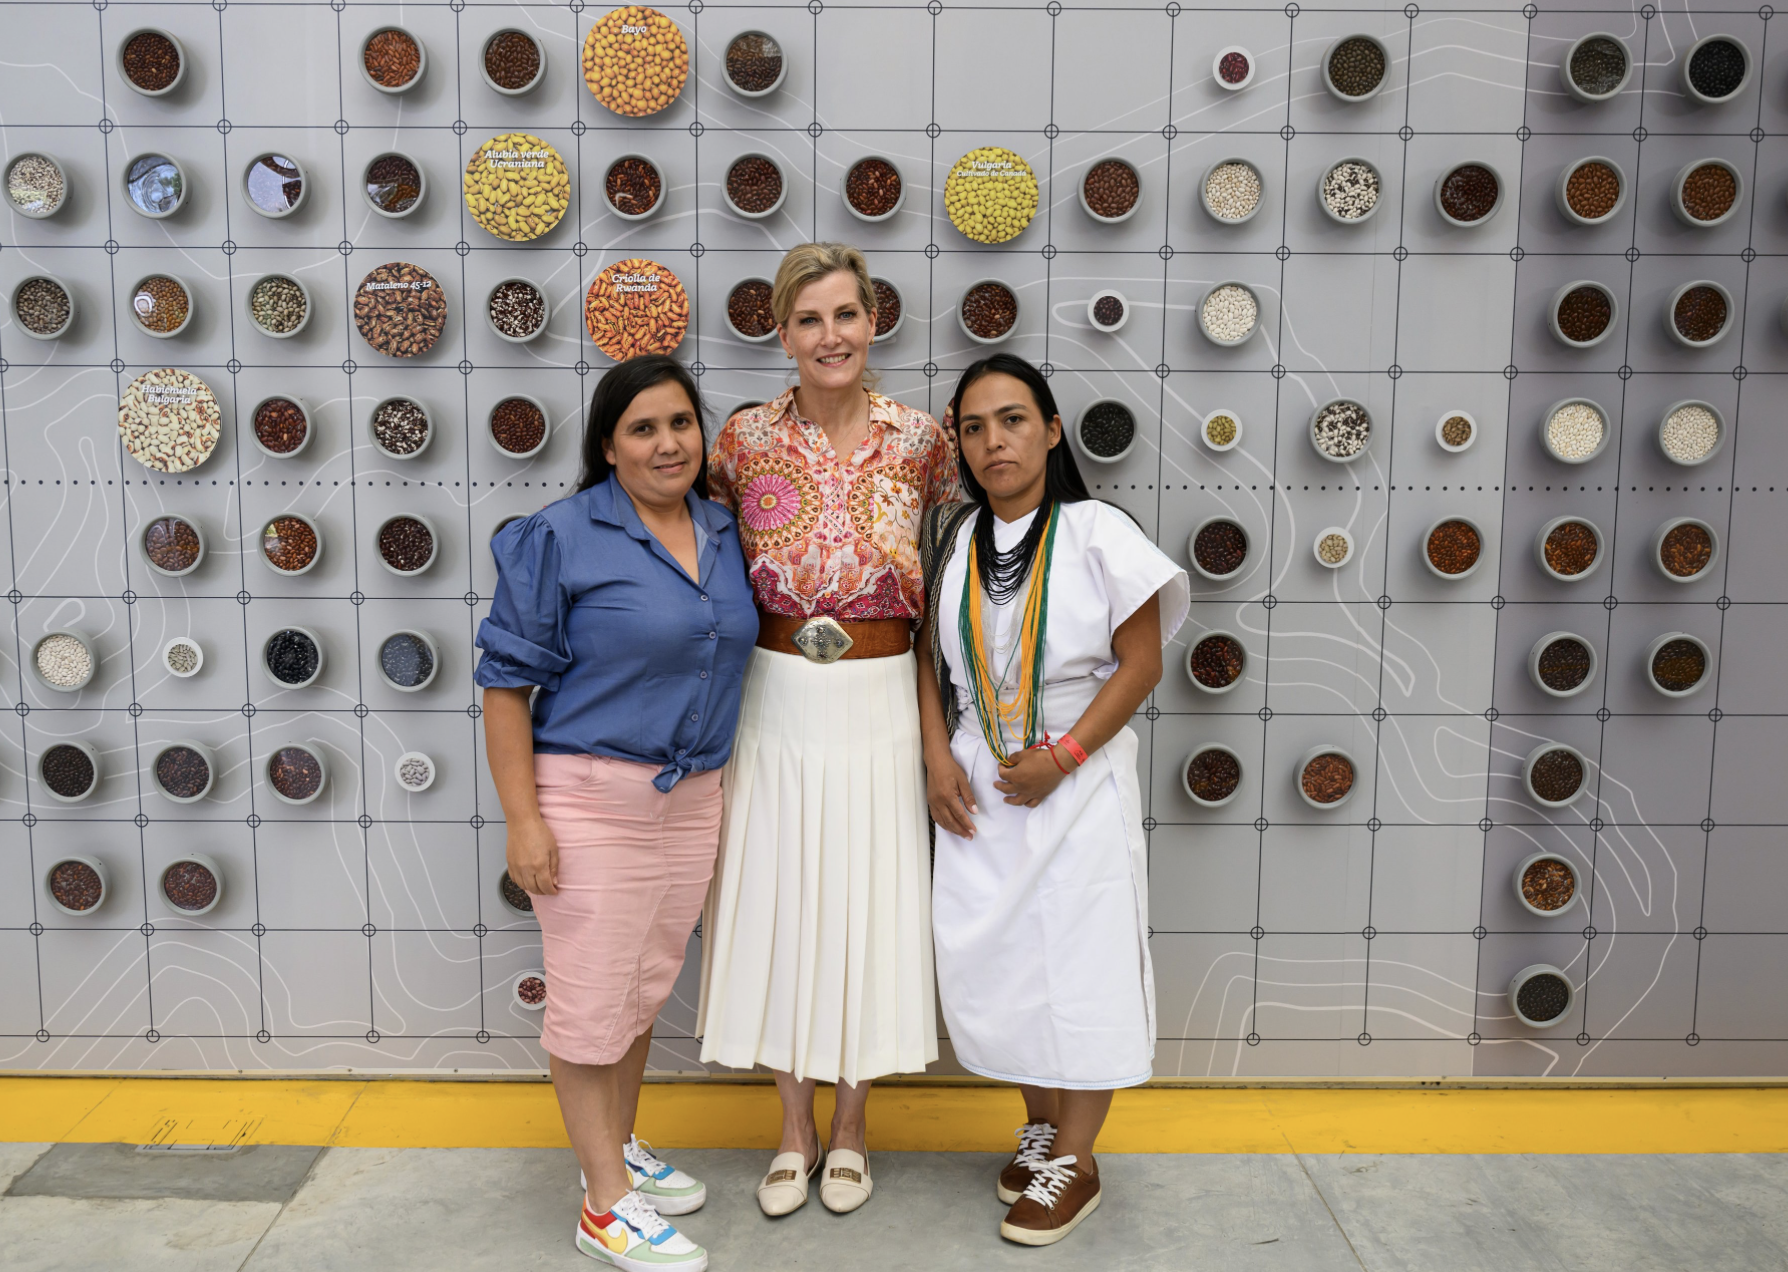 La duquesa de Edimburgo visita Colombia para apoyar a las víctimas del conflicto armado